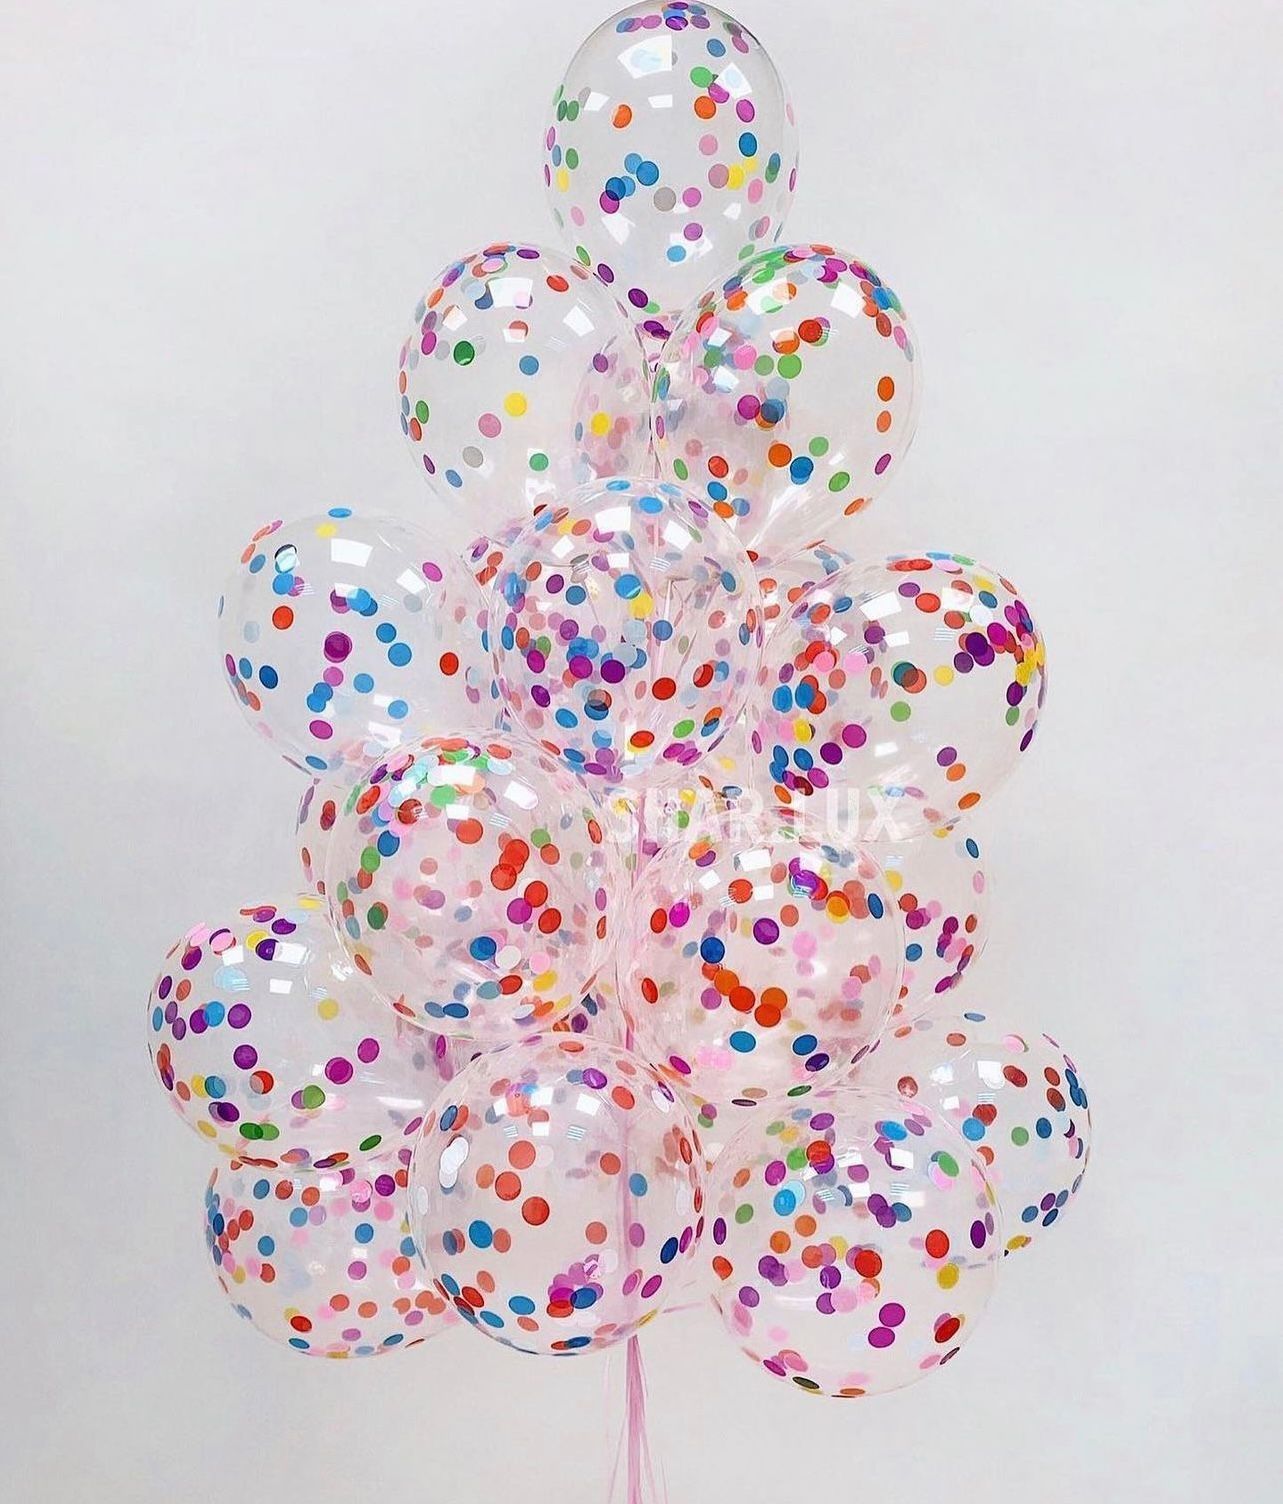 Продам красивые композиции из гелиевых шаров по разумным ценам